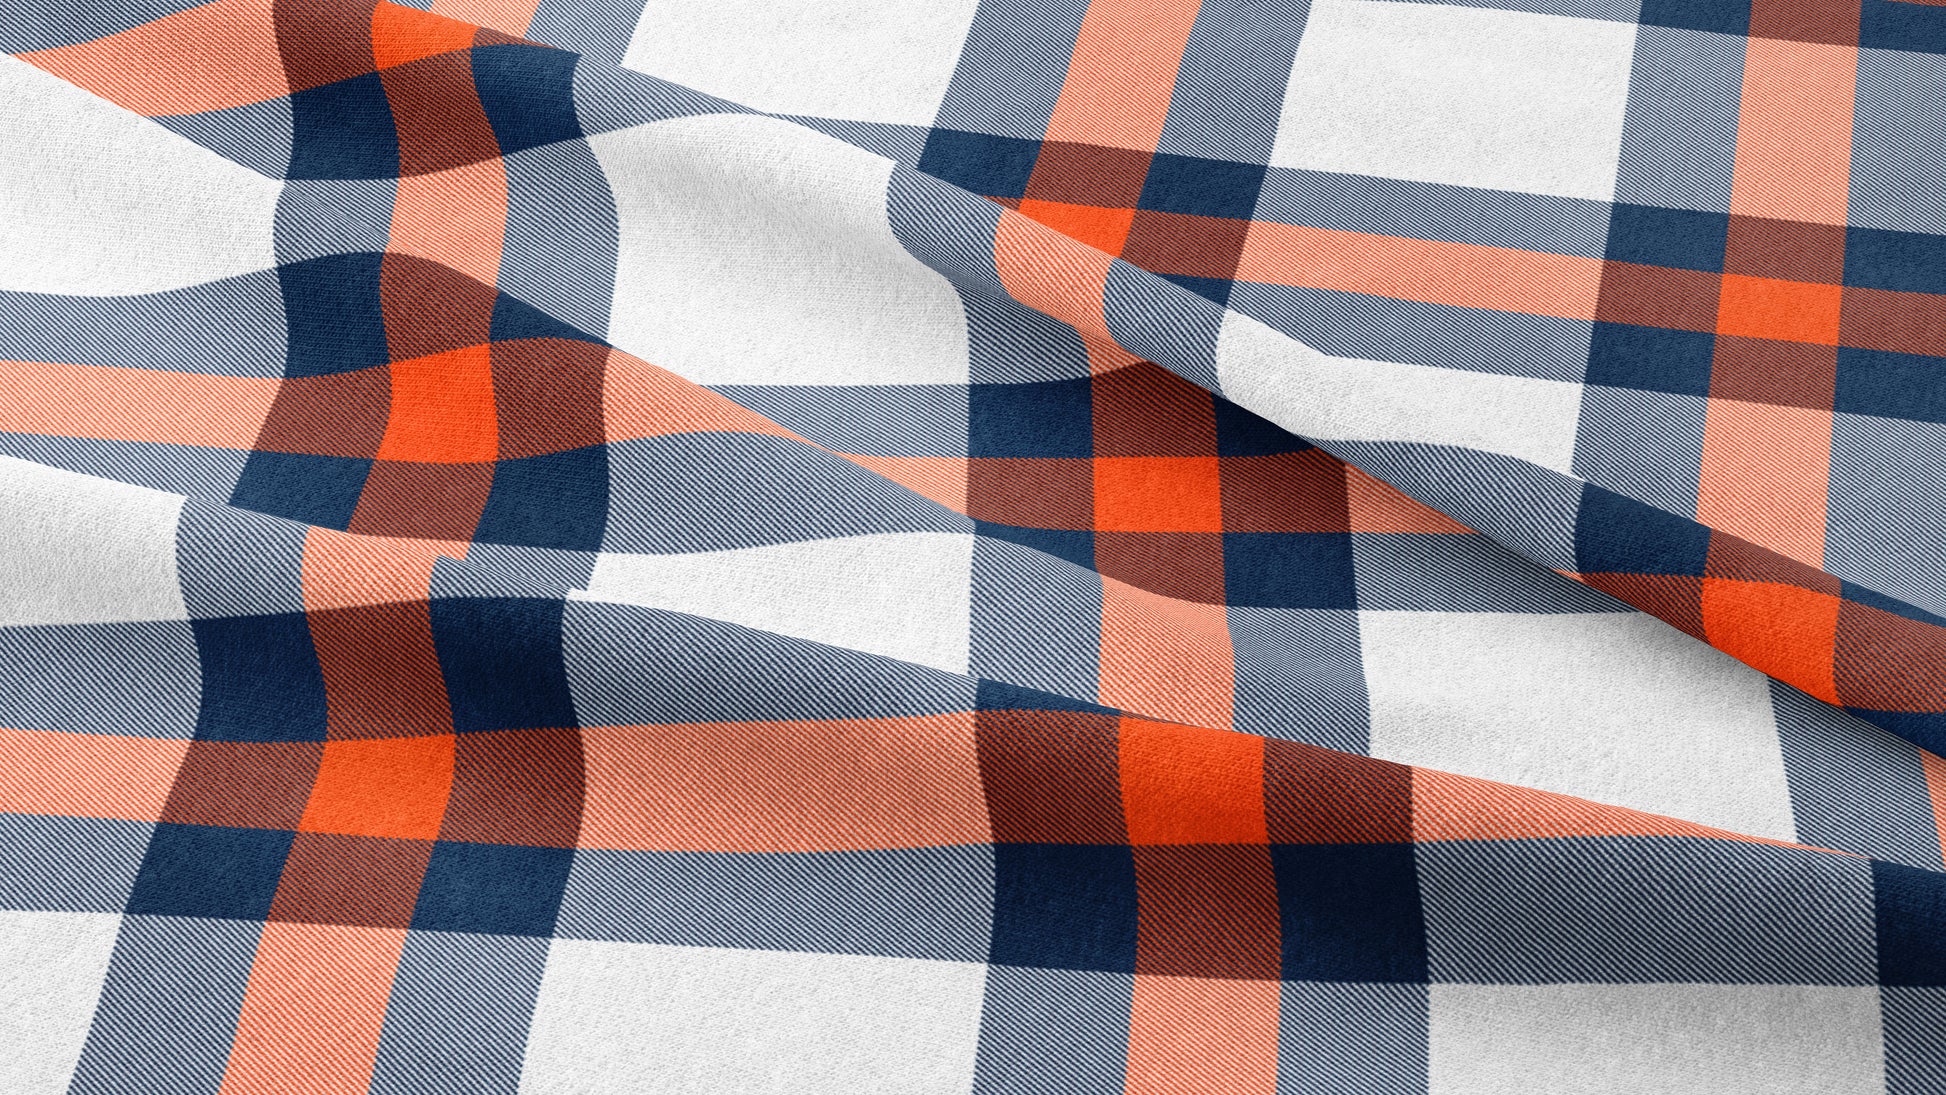 Team Plaid Denver Broncos Football Printed Fabric by Studio Ten Design